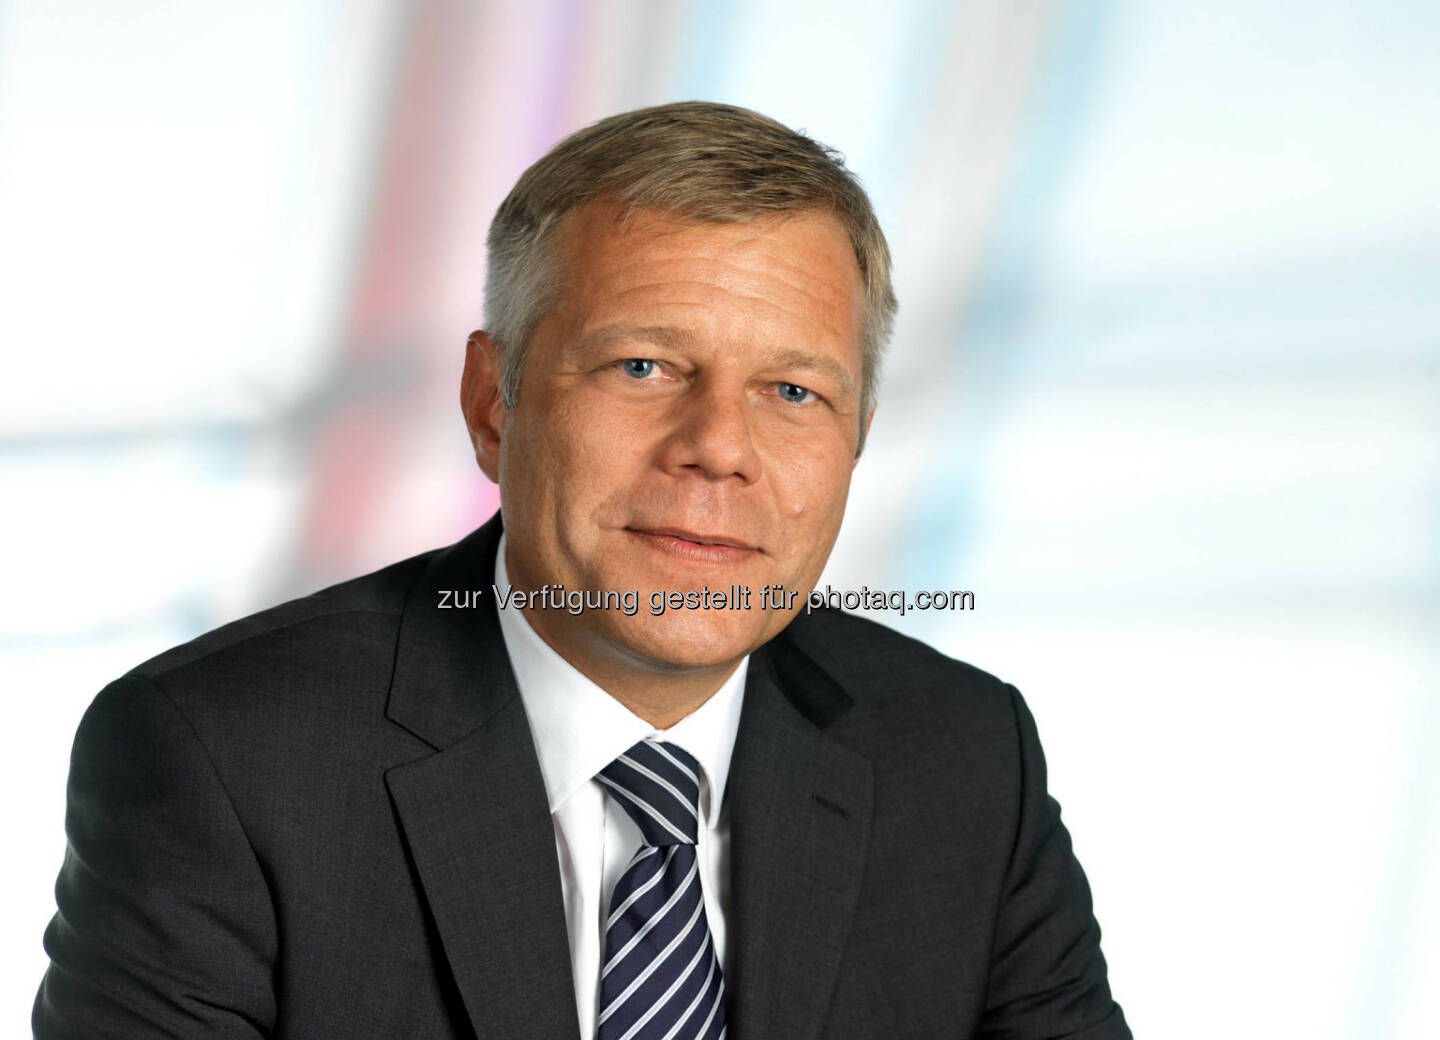 Alexander Schmidecker, CEO von Raiffeisen-Leasing, ist neues Vorstandsmitglied des Verbandes Österreichischer Leasing-Gesellschaften (VÖL), (C) Wilke